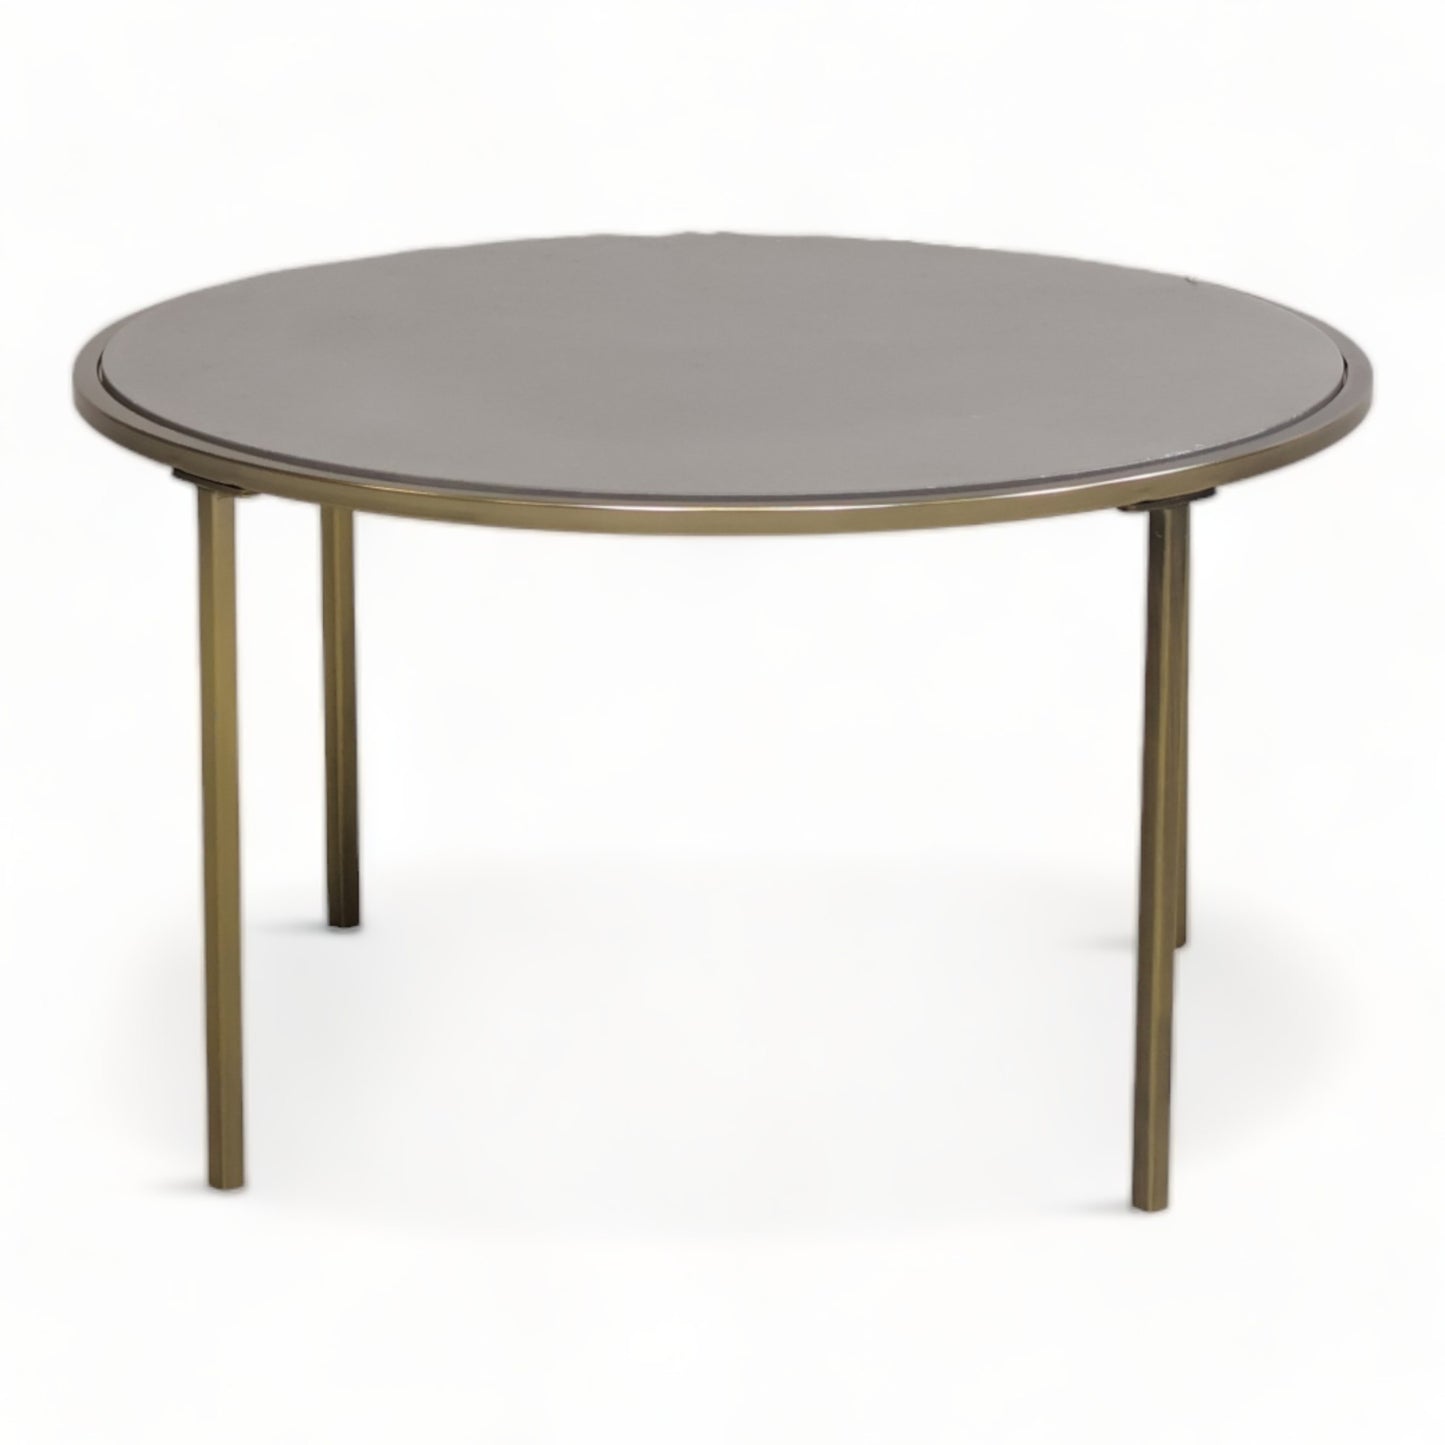 Kvalitetssikret | Moderne sofabord i fargen grå fra A-Møbler